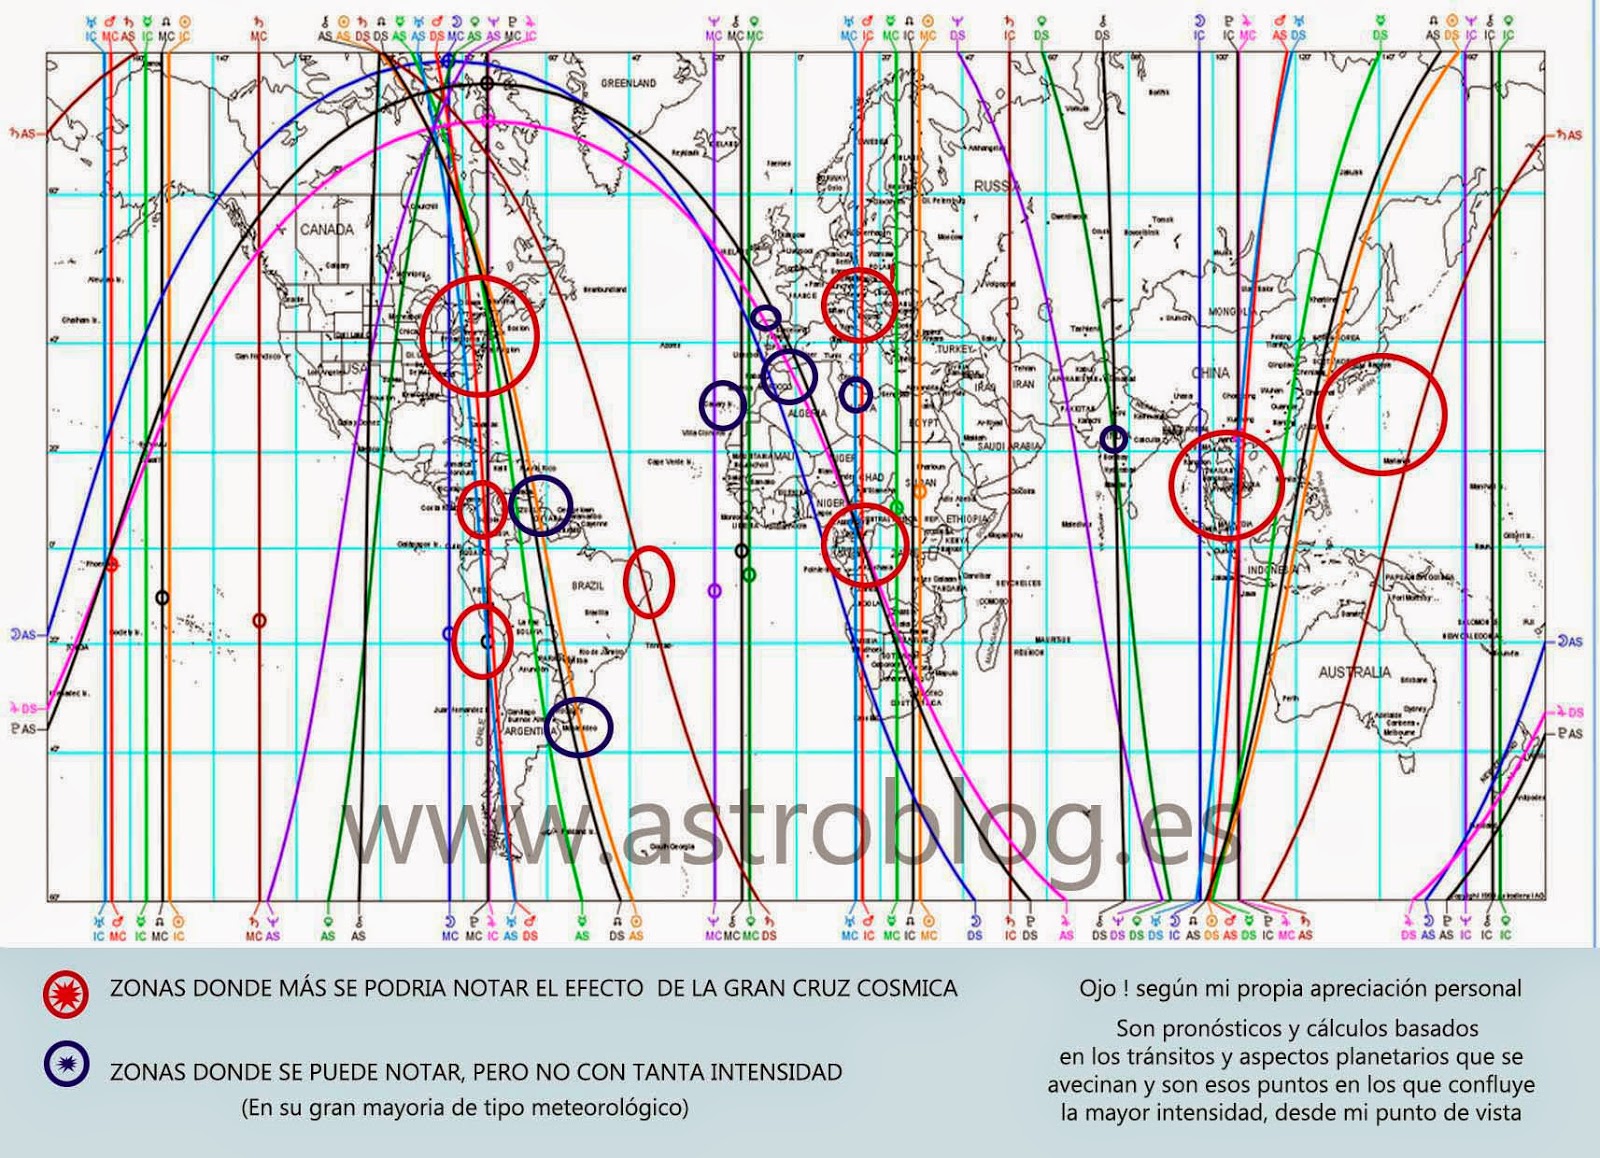 http://www.astroblog.es/4512/tiempo-de-eclipses-lunar-y-solar-en-la-gran-cruz-cosmica-%C2%BFcomo-usar-la-energia-de-su-efecto